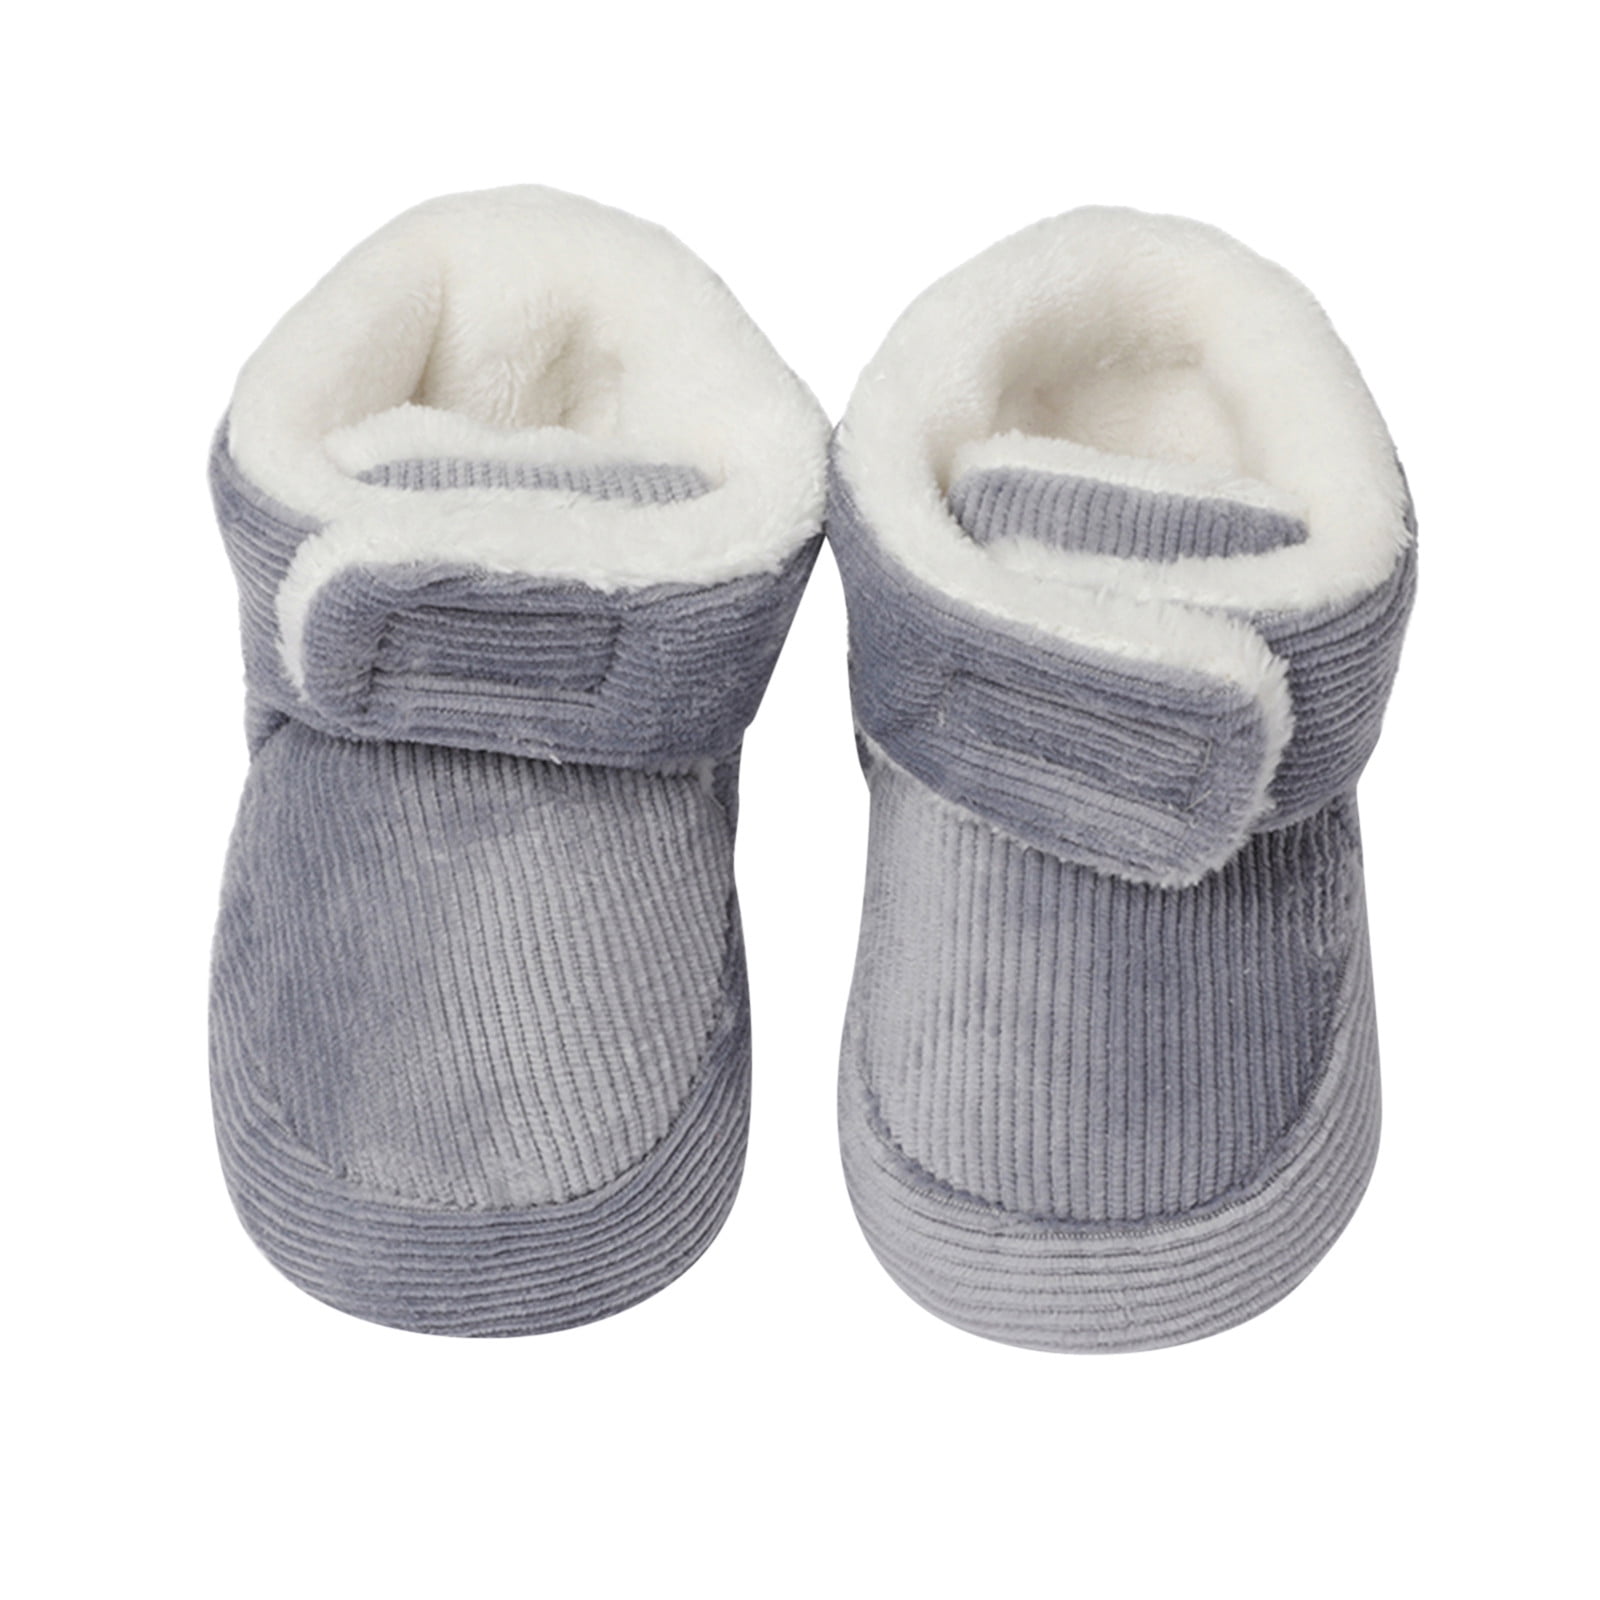 Misverstand Bepalen Zonder Gubotare Winter Booties For Baby Girl Baby Fleece Booties Newborn Warm  Slippers Cozy Winter Boots Sock Shoes Infant Crib Bootie,Gray 6 Months -  Walmart.com